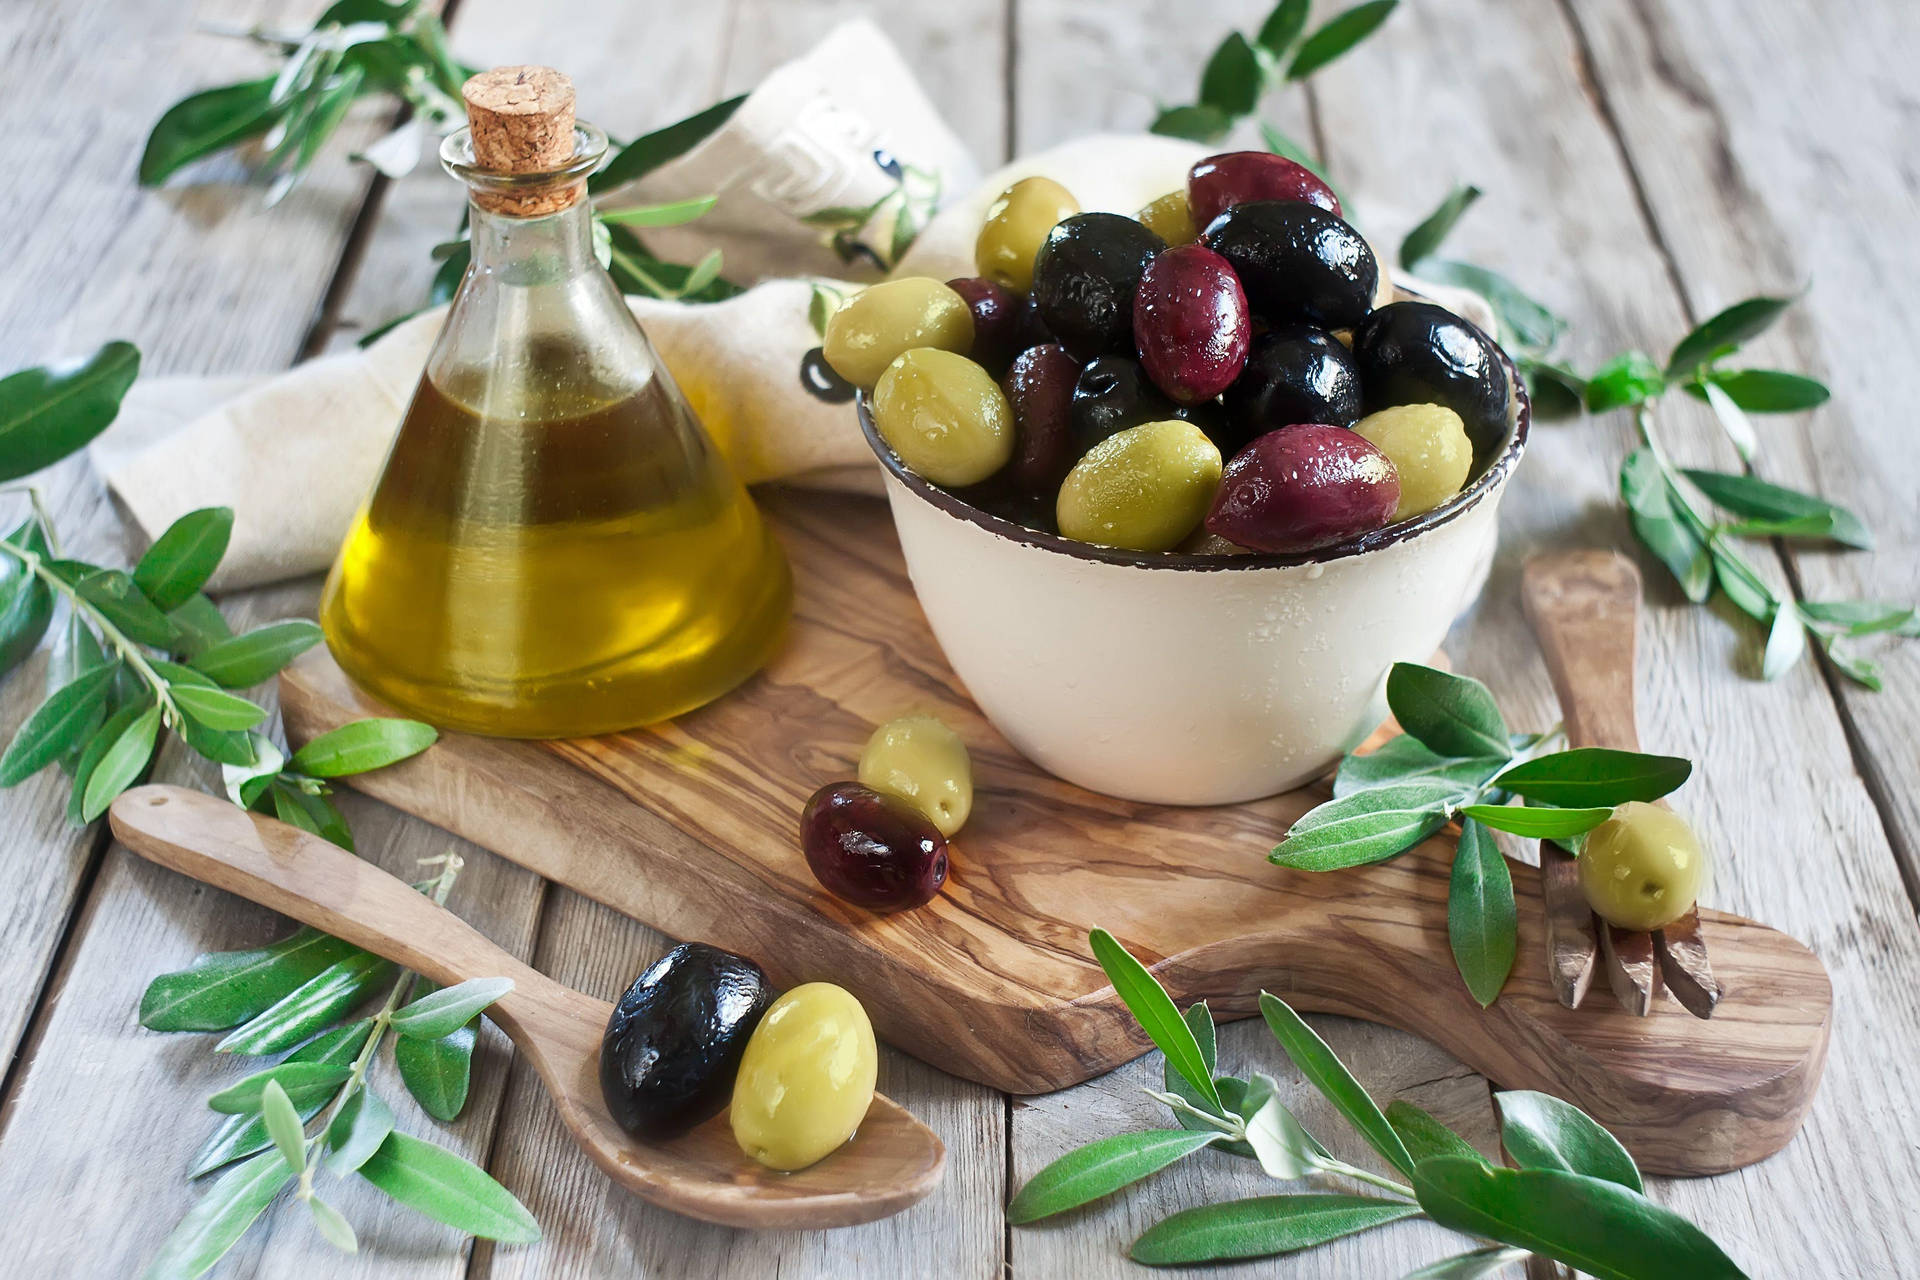 Wallpaper - Olivenfrugt og olie sundhedsmæssige fordele wallpaper Wallpaper